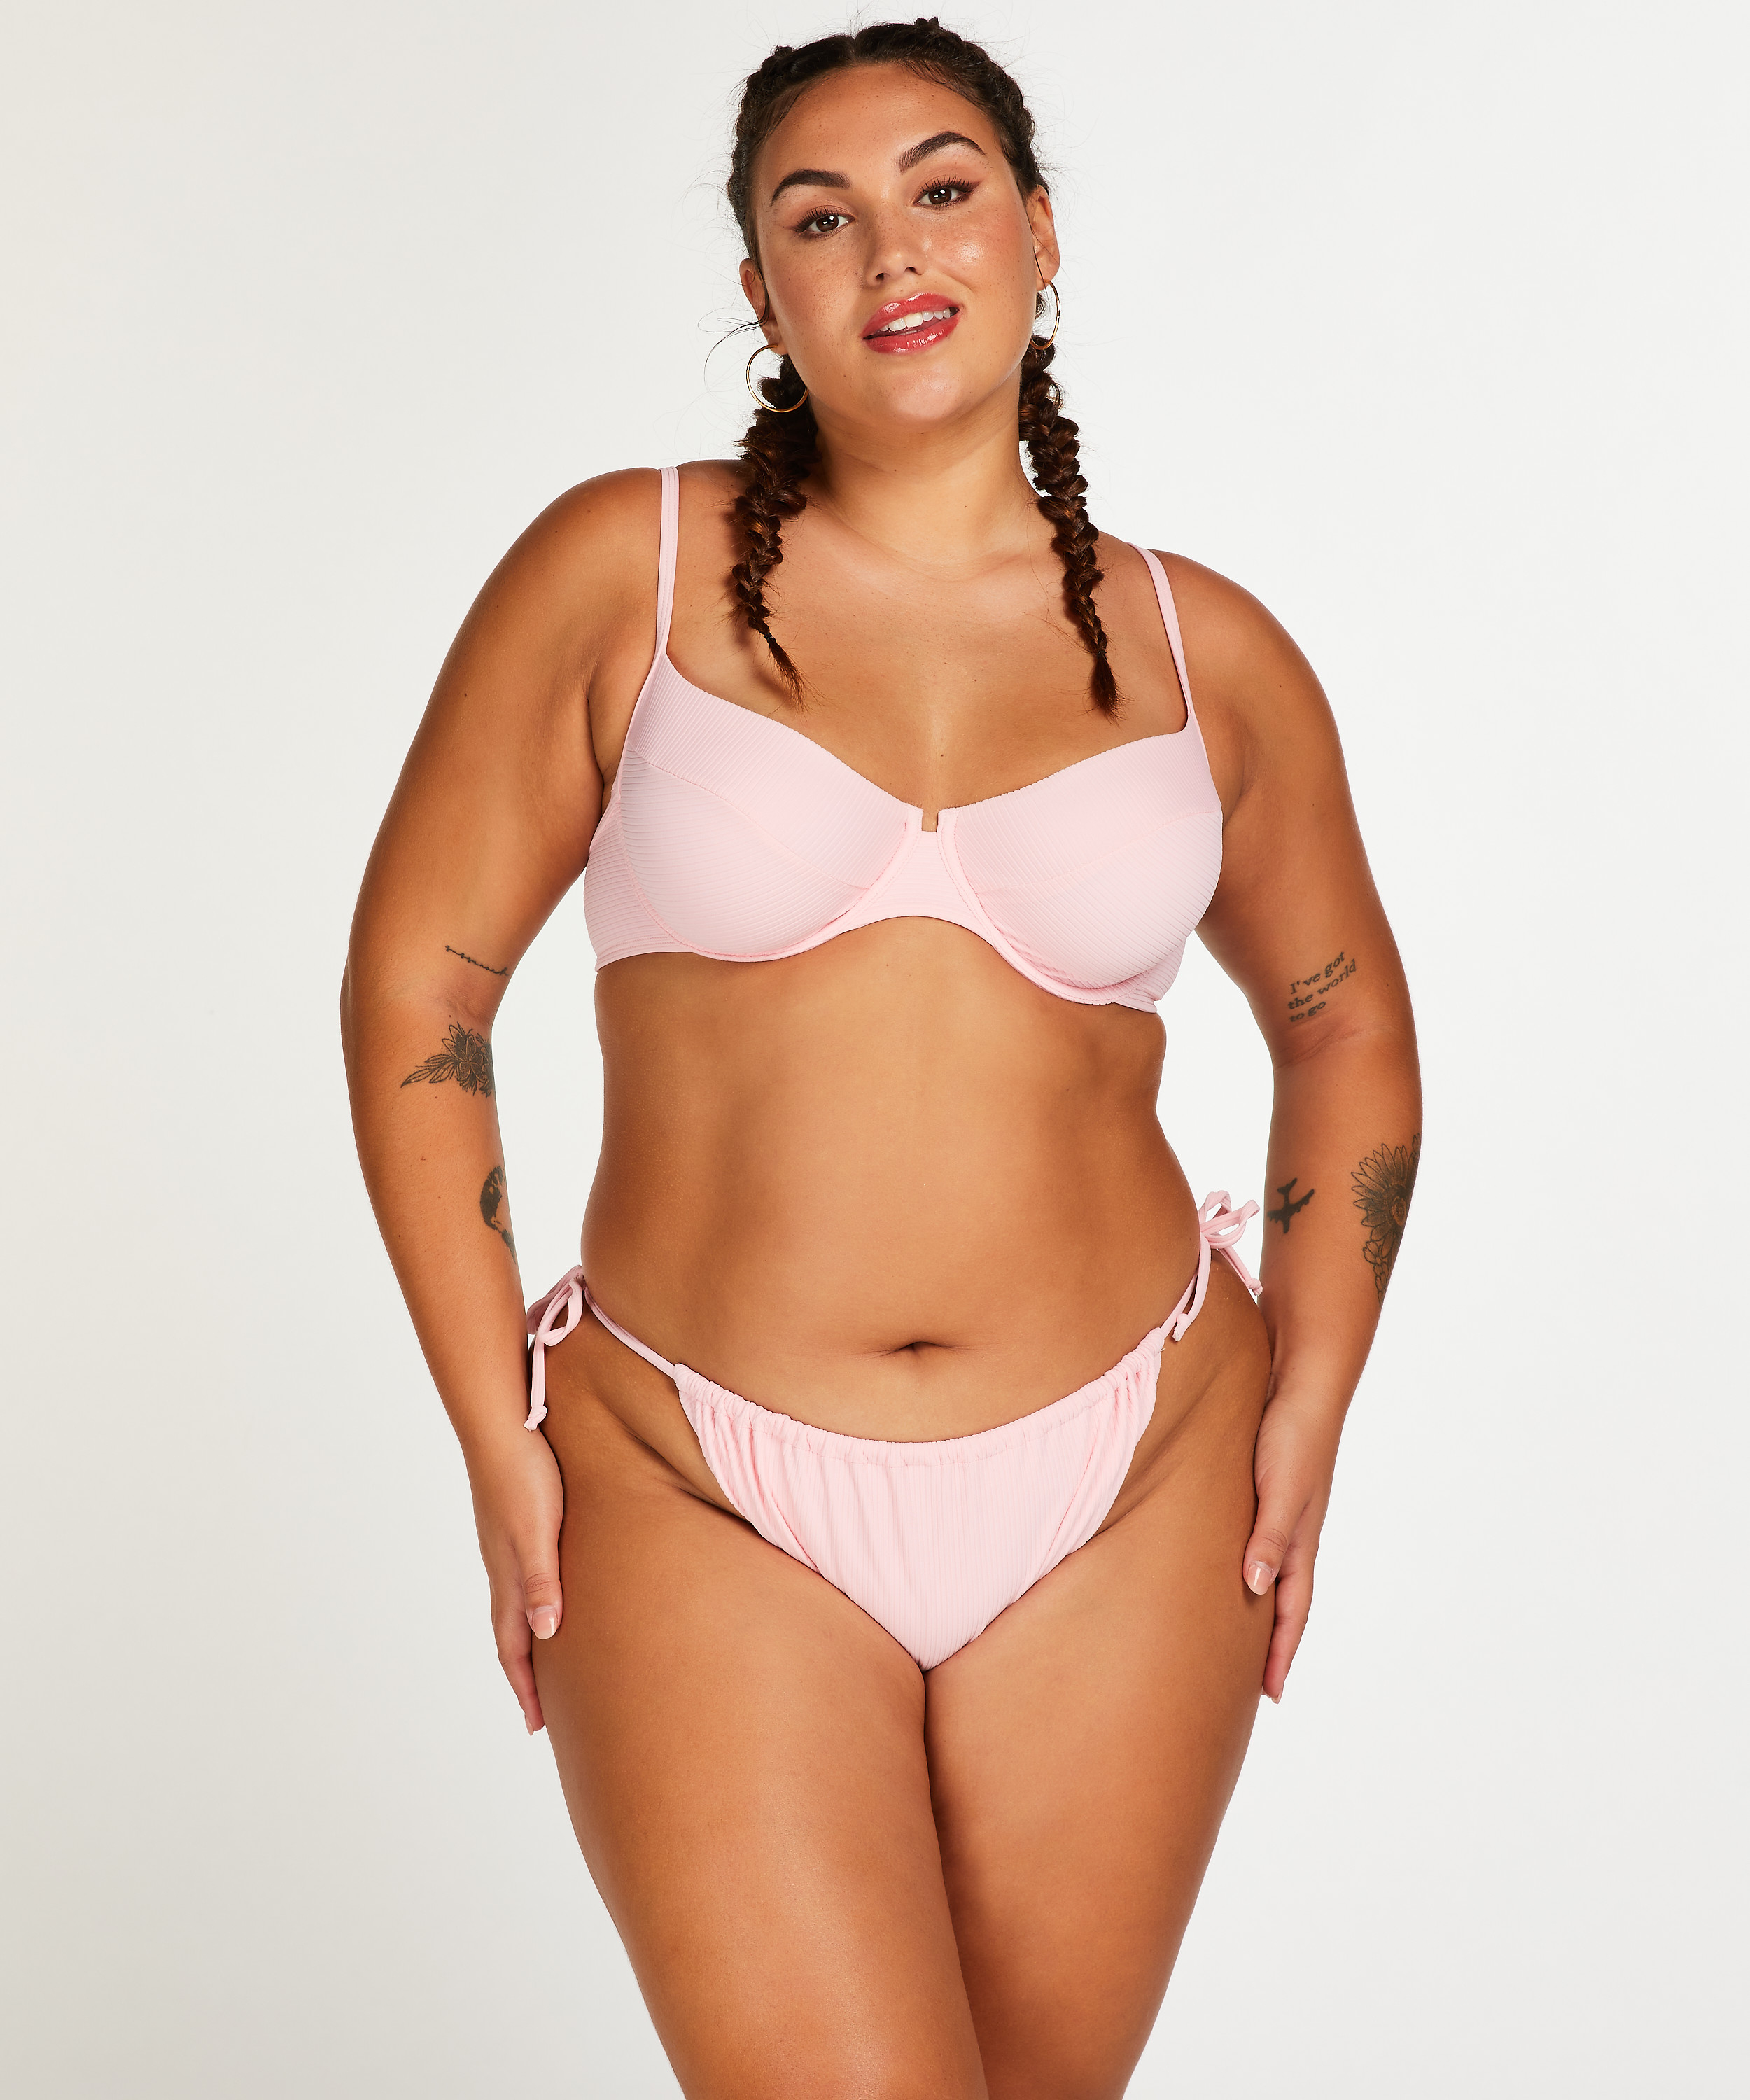 Texture high-cut bikini bottoms, Pink, main